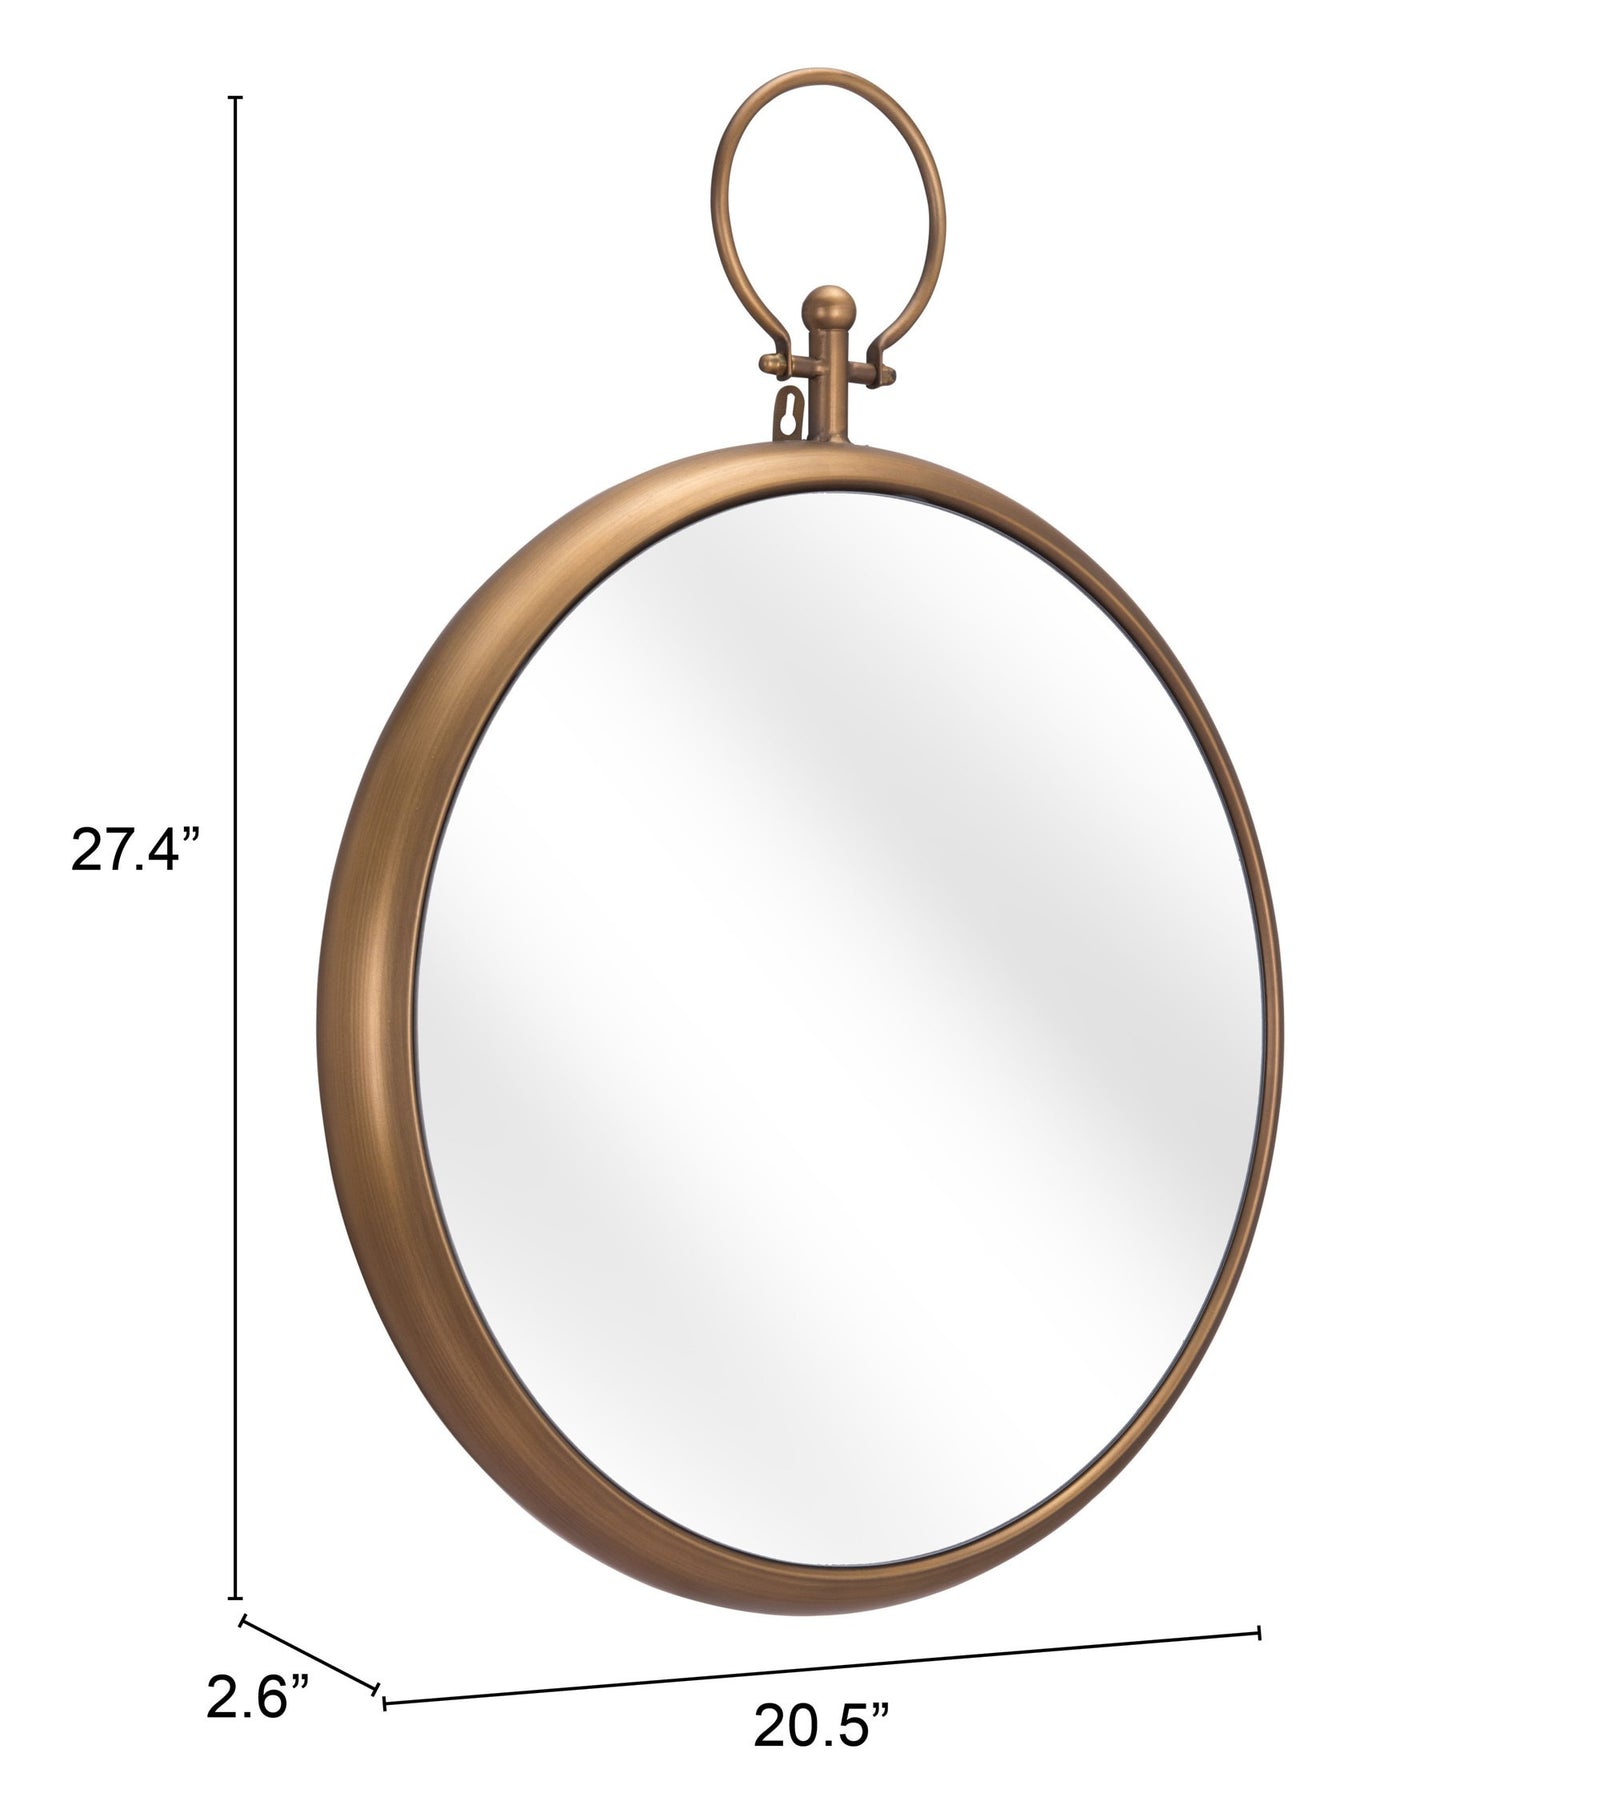 Gold Round Hanging Mirror